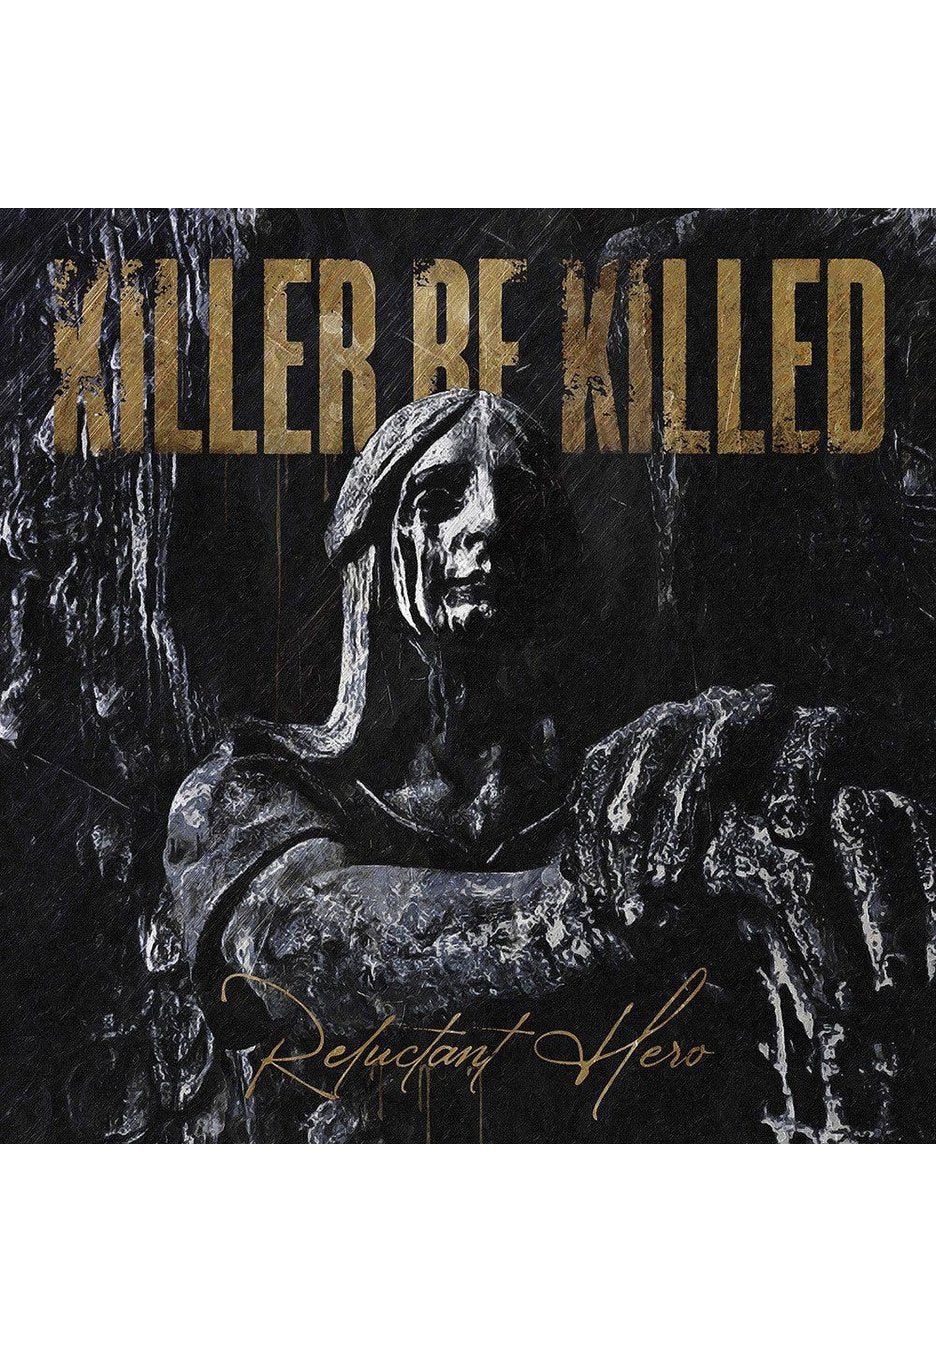 Killer Be Killed - Reluctant Hero - 2 Vinyl